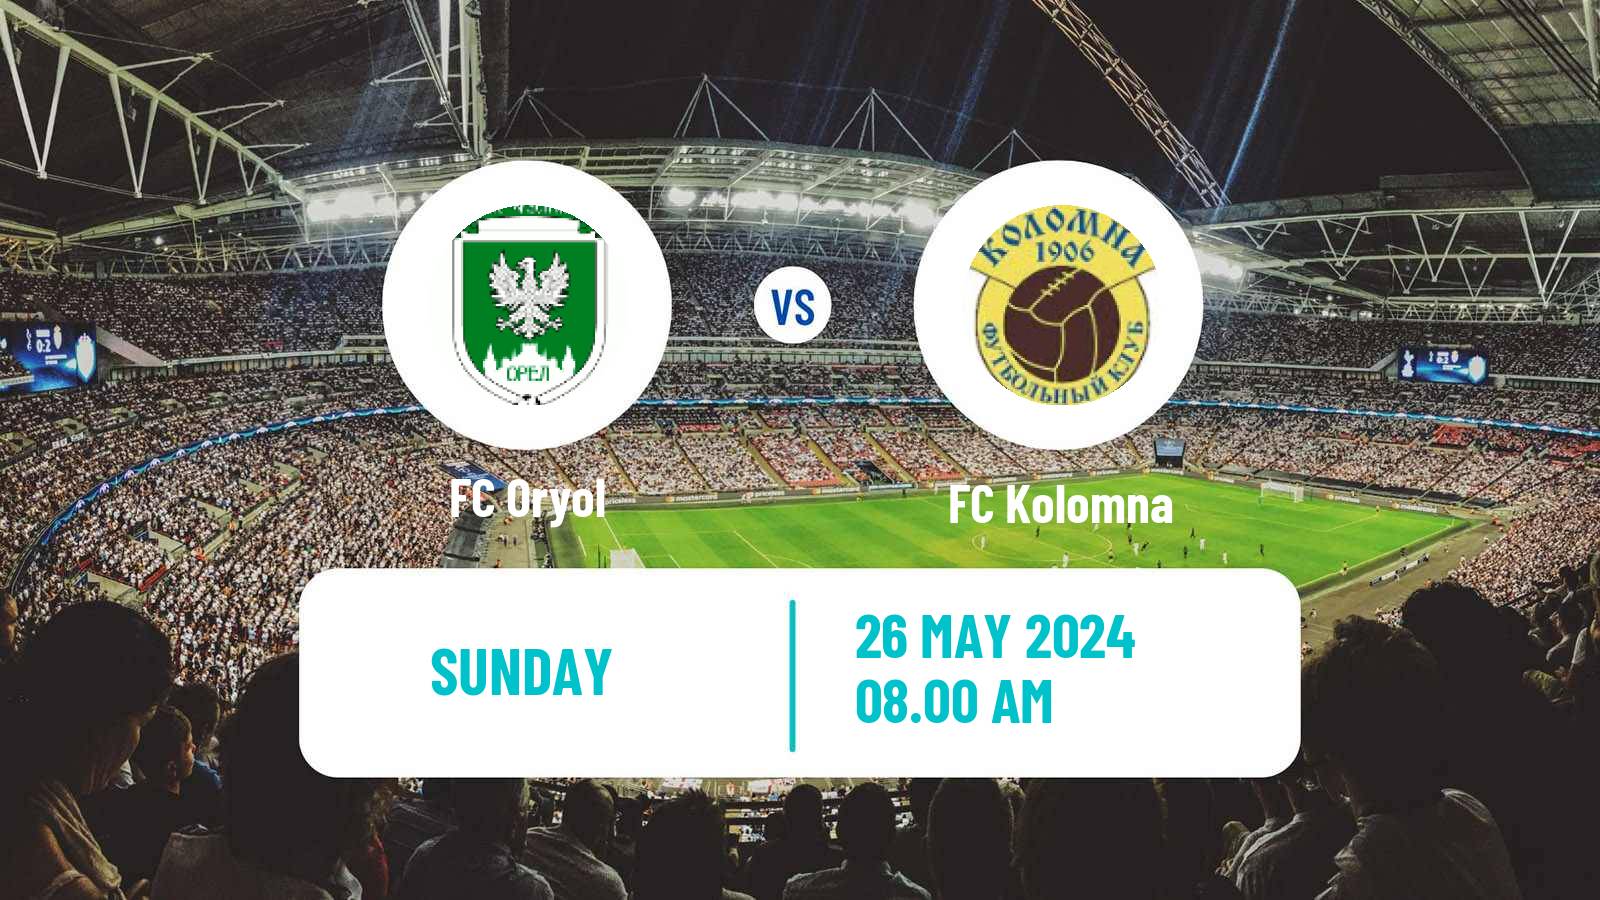 Soccer FNL 2 Division B Group 3 Oryol - Kolomna